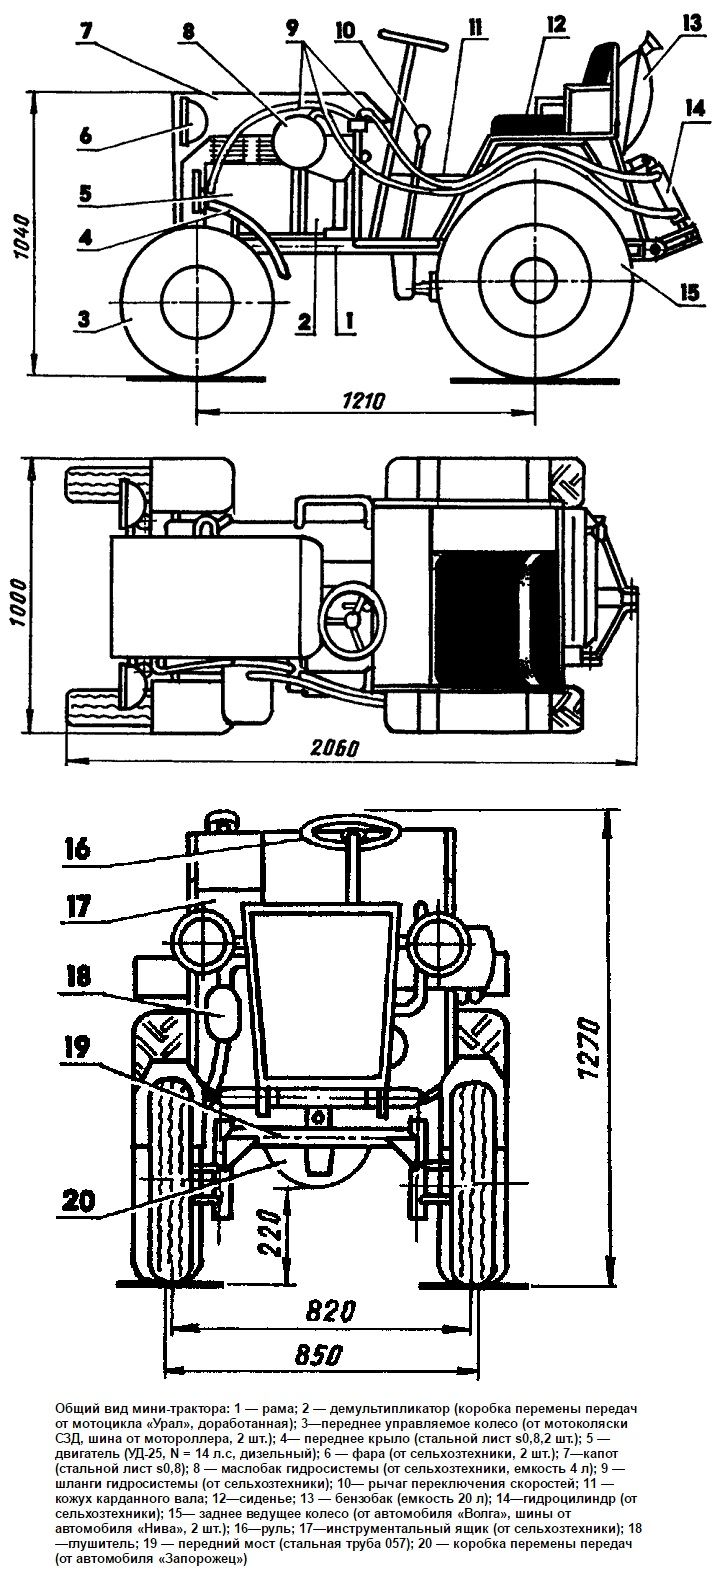 Самодельные трактора с двигателем от ваз с фото и видео инструкциями